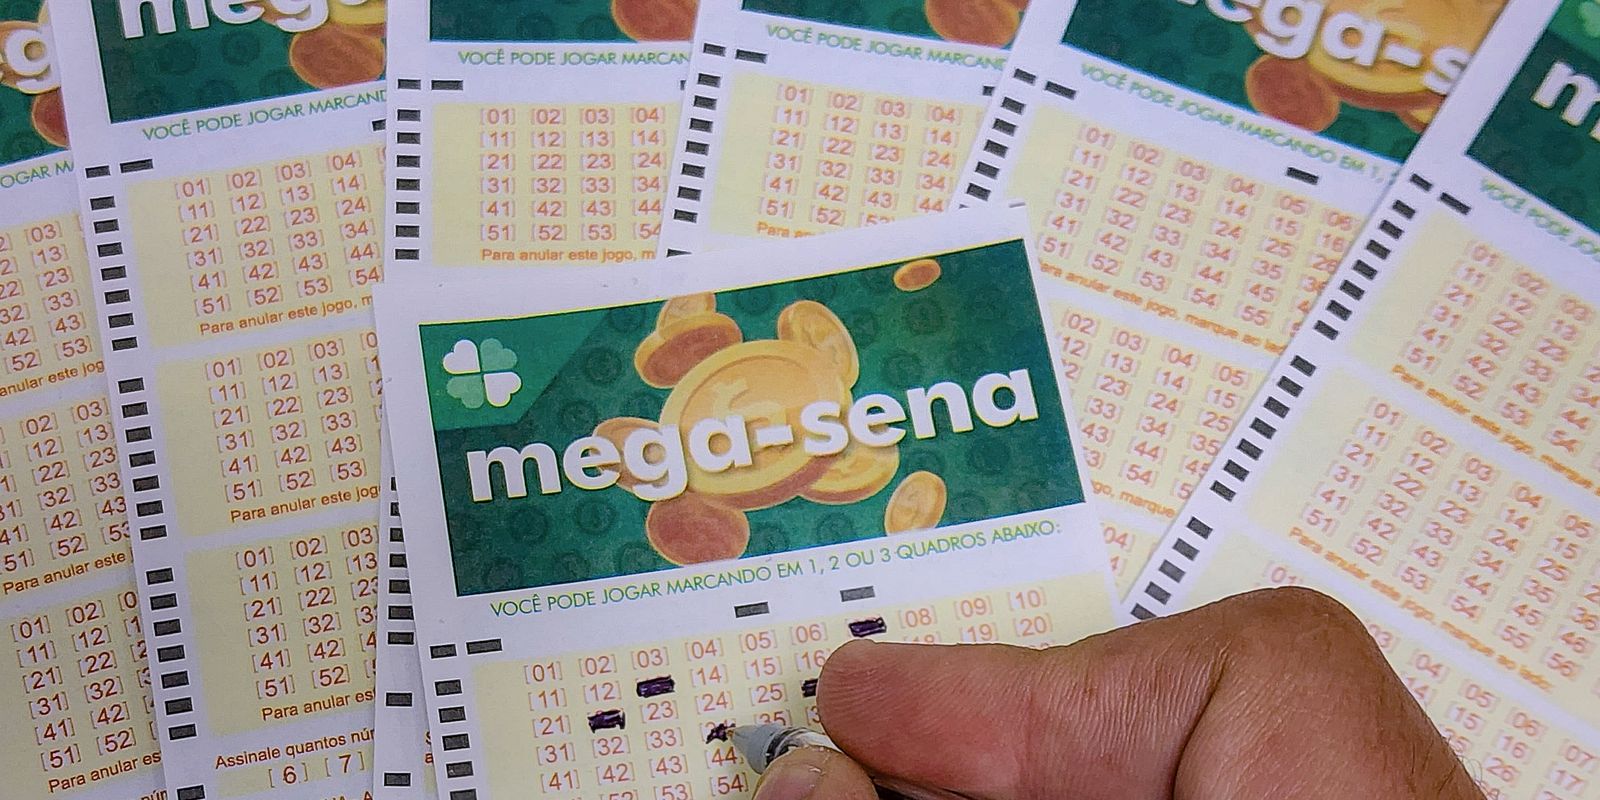 Mega-Sena acumulada pode pagar prêmio de R$ 48 milhões